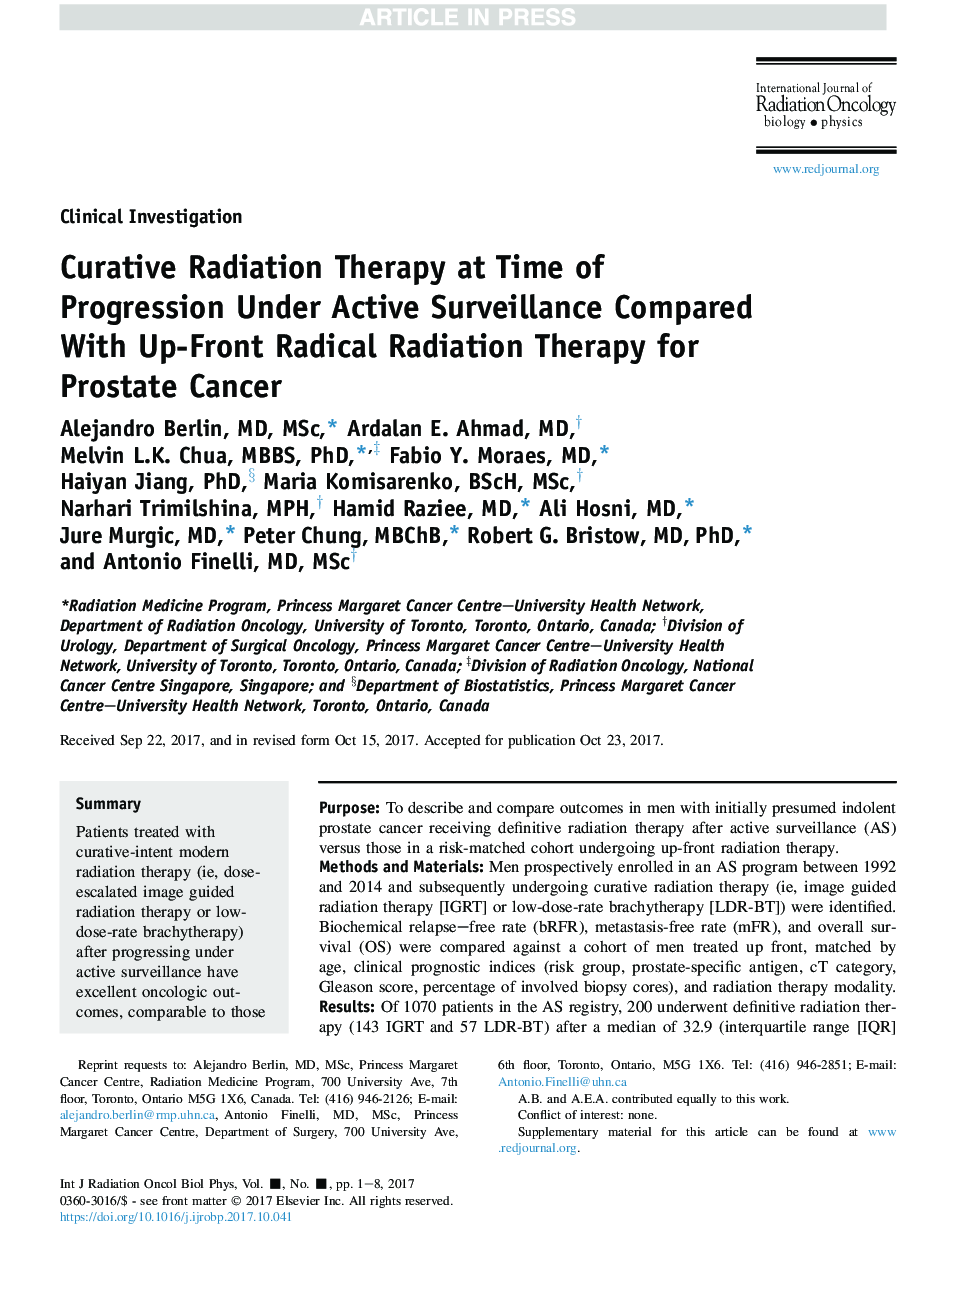 درمان پرتو درمانی در زمان پیشرفت تحت نظارت های فعال در مقایسه با درمان رادیواکتیو تا سرطان برای سرطان پروستات 